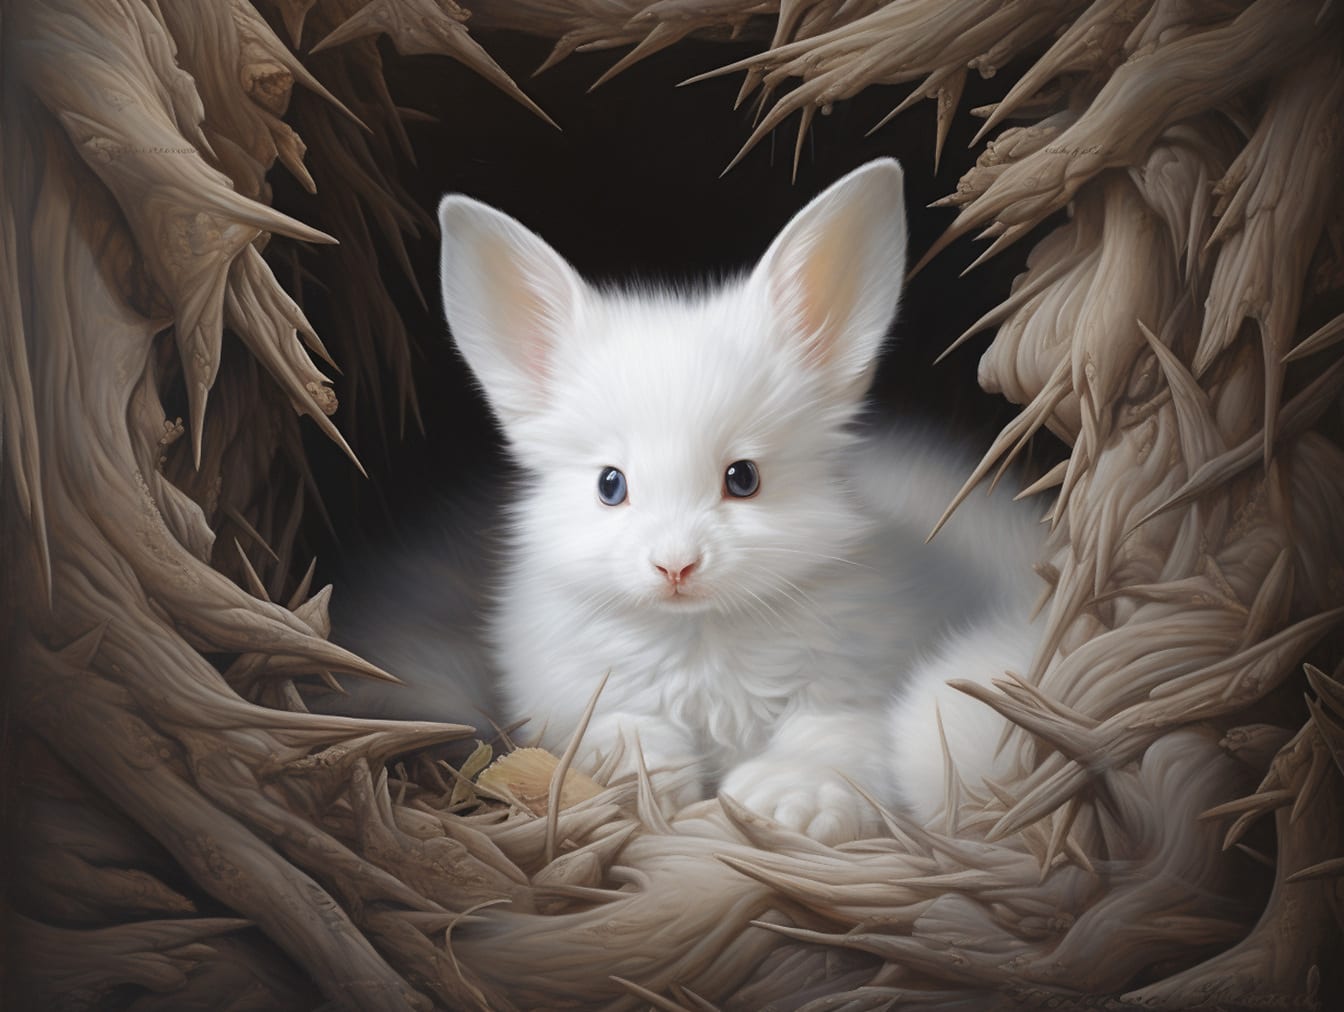 สิ่งมีชีวิตแฟนตาซีกระต่ายสีขาวที่มีหูใหญ่